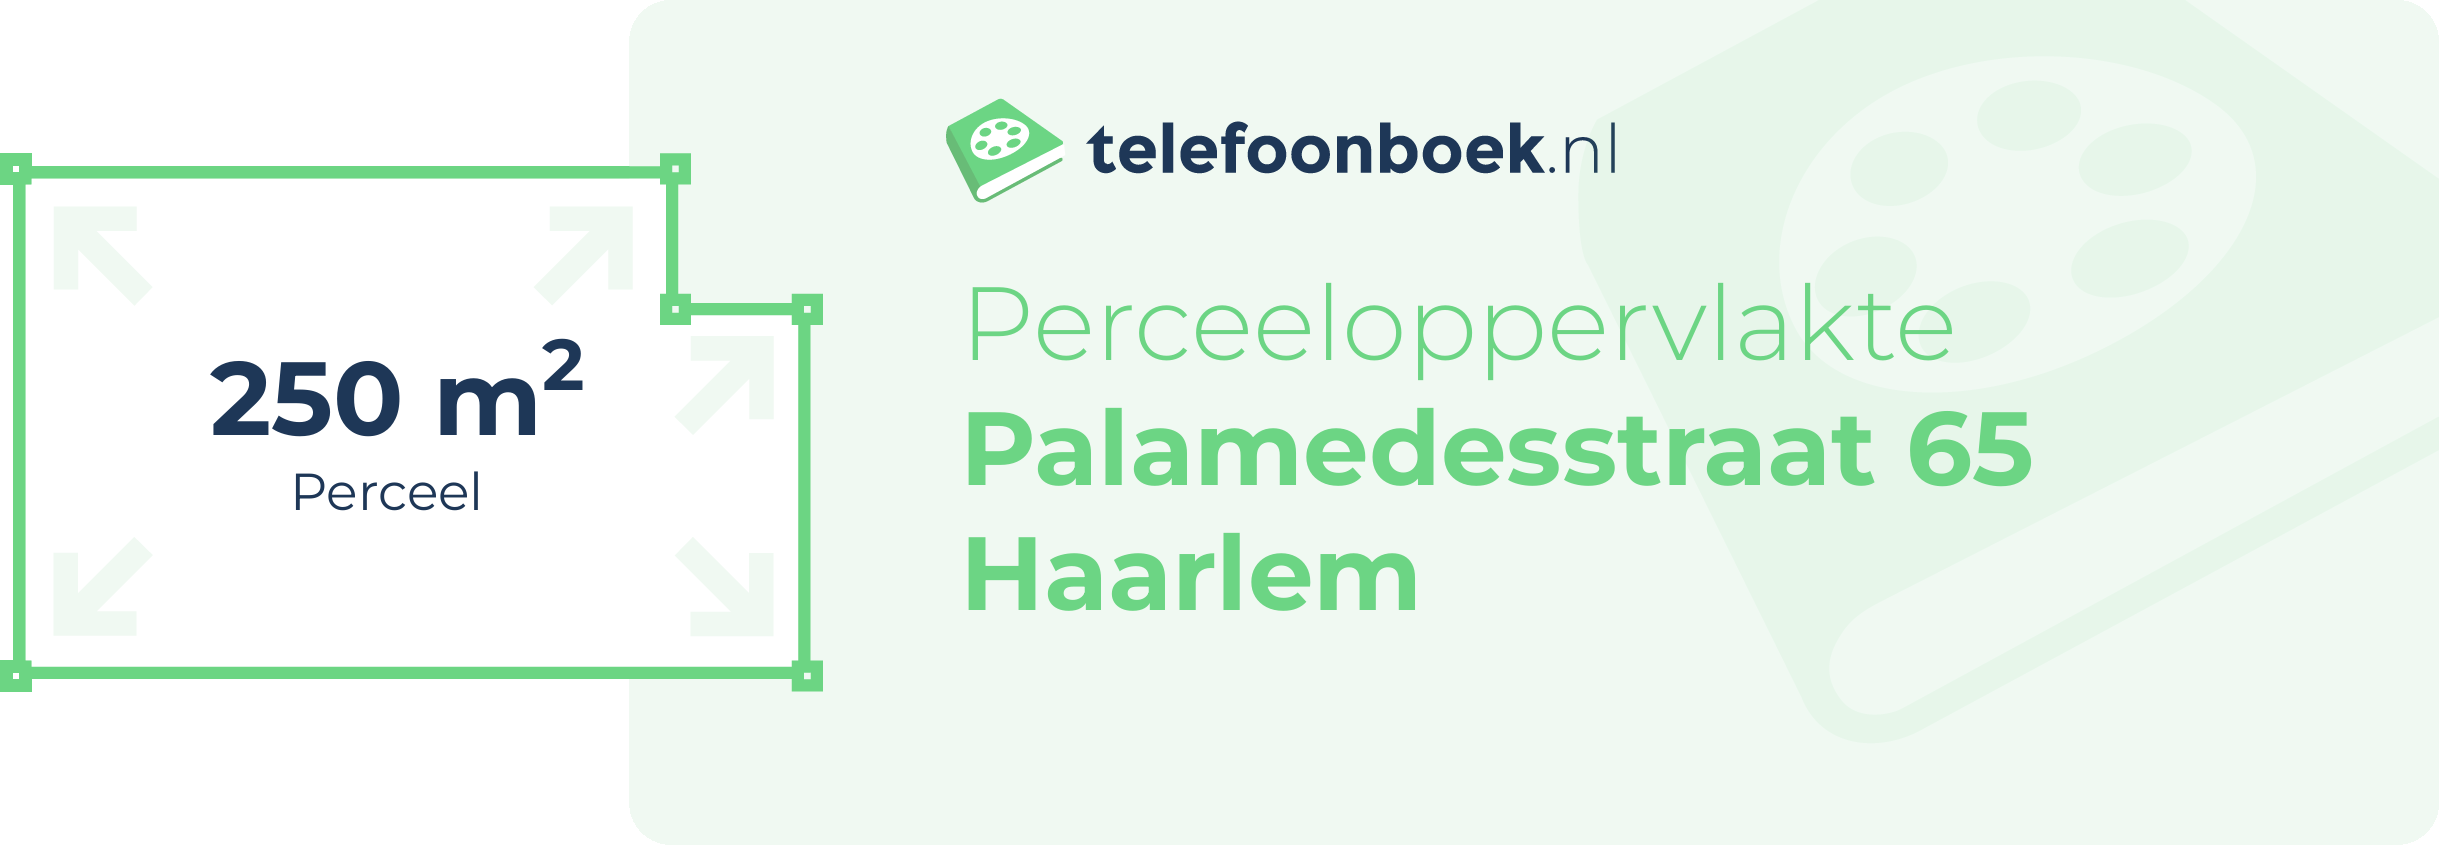 Perceeloppervlakte Palamedesstraat 65 Haarlem